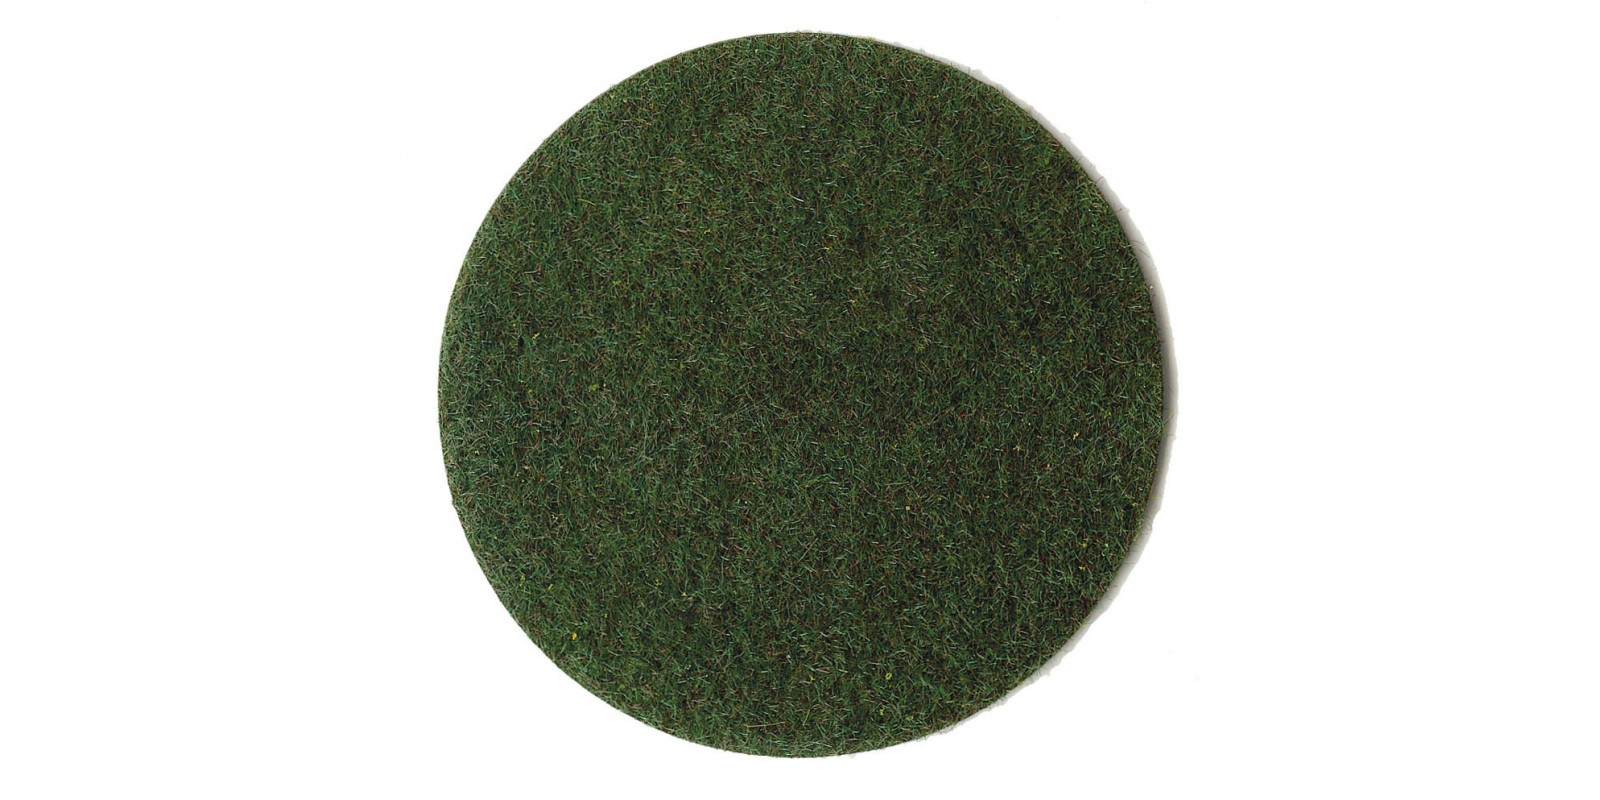 HE3362 GRASS FIBER PEAT SOIL, 100 G, 2-3 MM